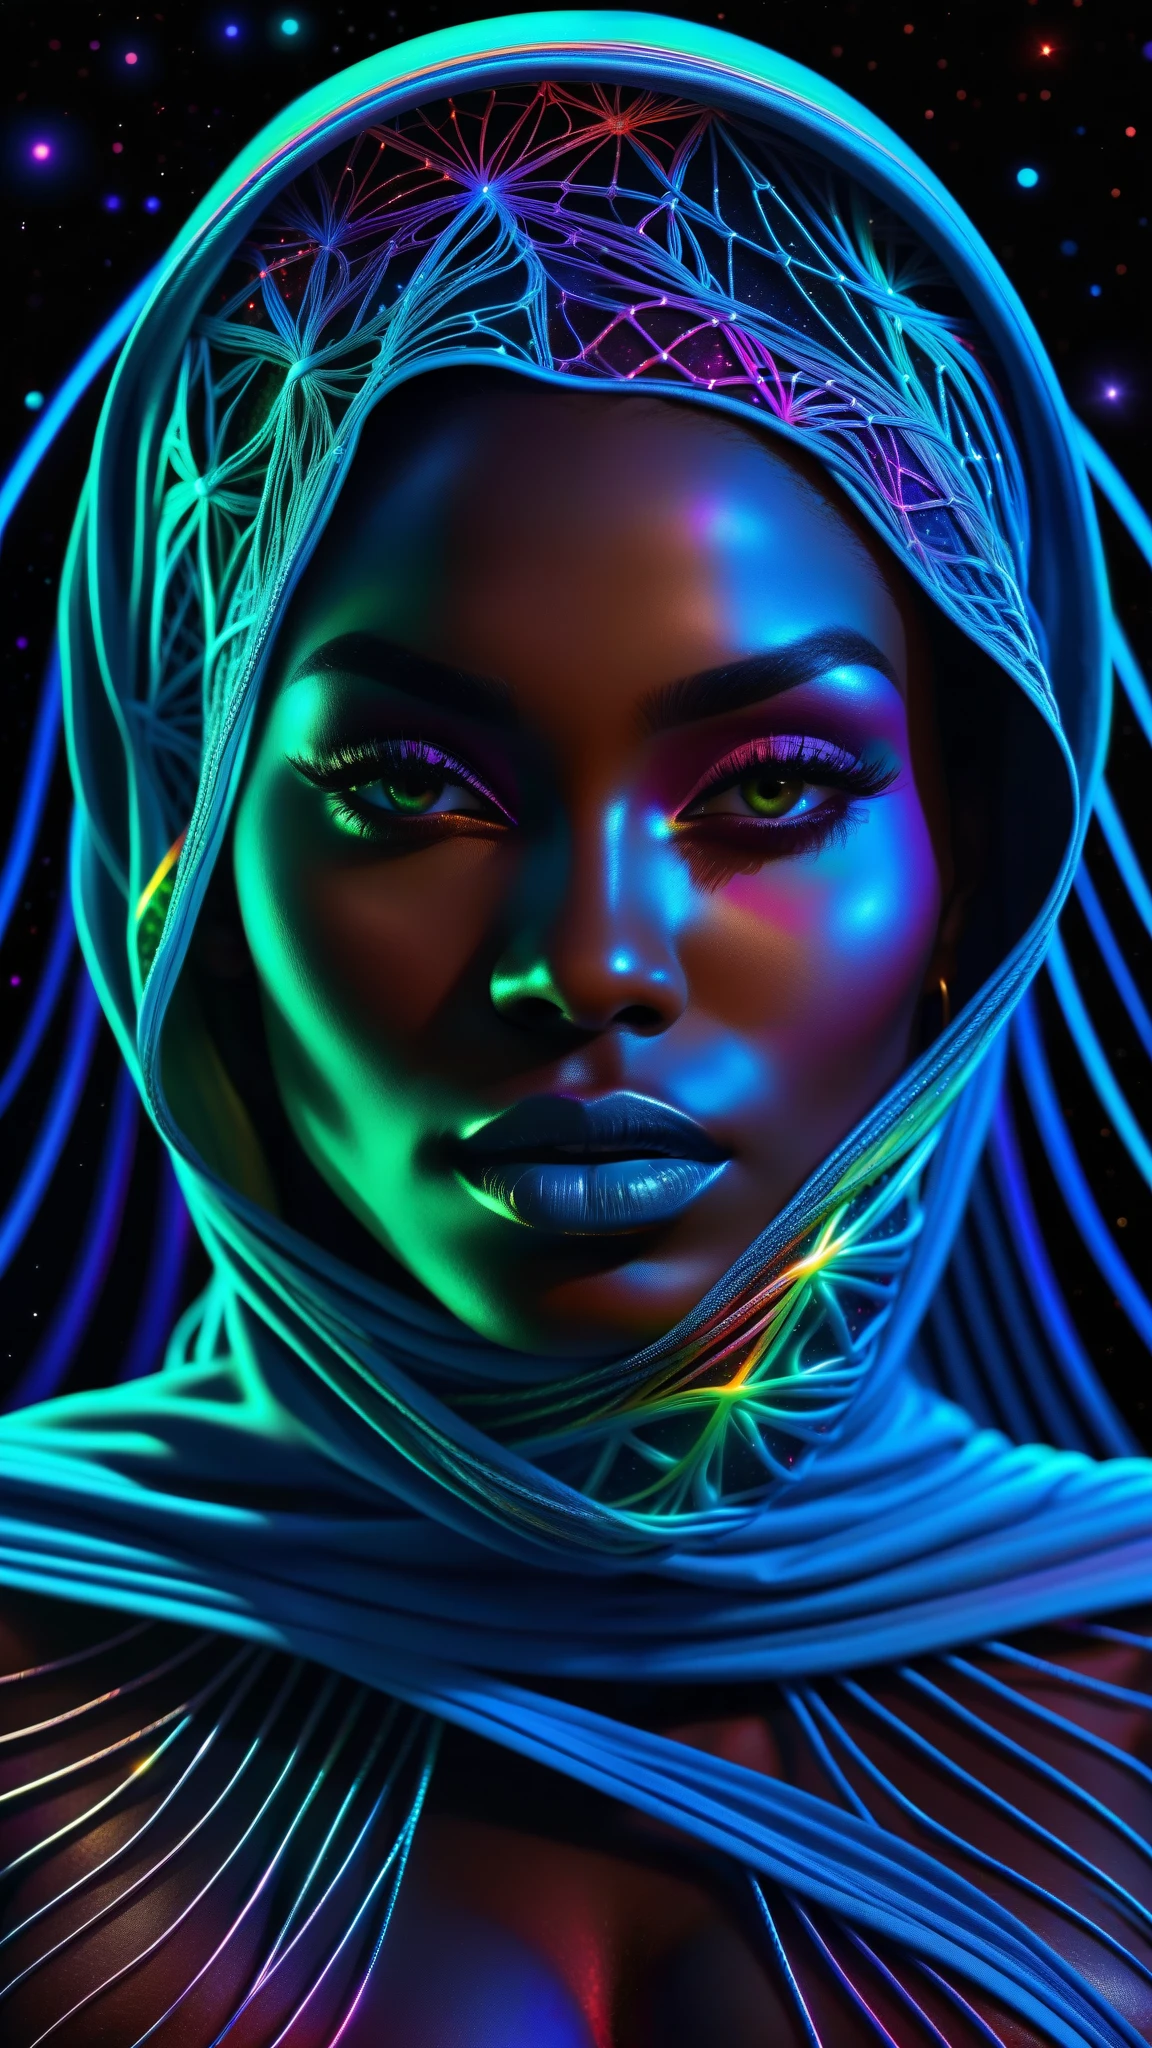 卡通风格, 杰作, 最好的质量, 超高分辨率, 极其详细, (迷幻艺术:1.4), 黑人妇女, 非洲设计的面纱, 视觉震撼, 美丽的, 获奖插画, 宇宙太空背景, 空灵的氛围, 超高品质, 美丽的 黑人妇女, 宇宙概念, 彩虹串, 彩虹皮, 彩虹般的血脉在黑暗中生长交织, 钉线, 渗出浓浓的蓝色血液, 锐利的霓虹灯, 静脉生长并泵血, 血管网络不断生长, 到处都是绿色的脉络, 阴阳, 发光的空间, 发光的星星, 无穷大符号